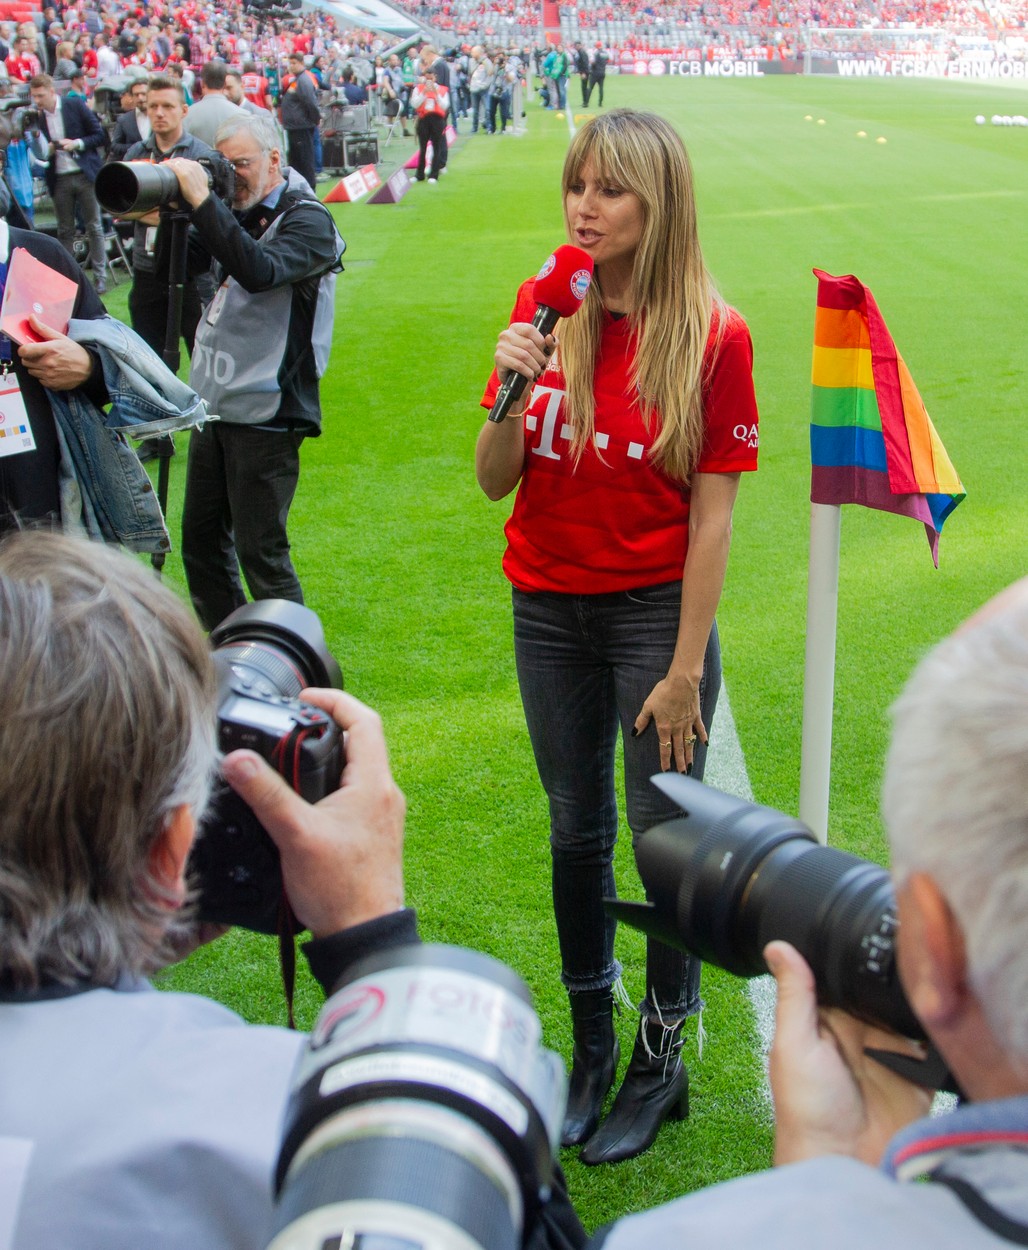 Heidi Klum, pasionată de fotbal /Profimedia